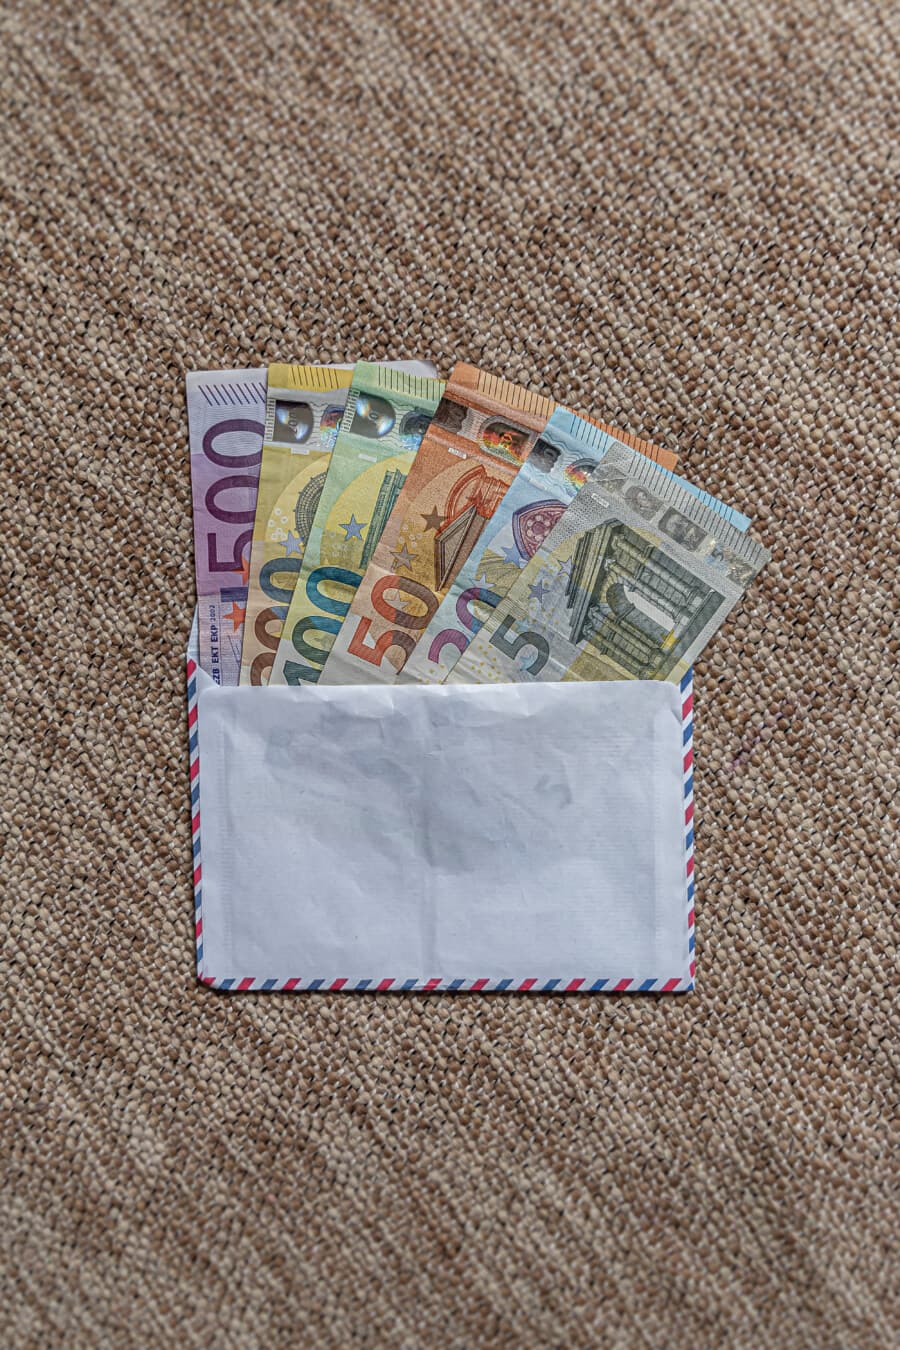 Biała koperta, w której znajdują się oszczędności gotówkowe, ilustrujące pieniądze na zakupy